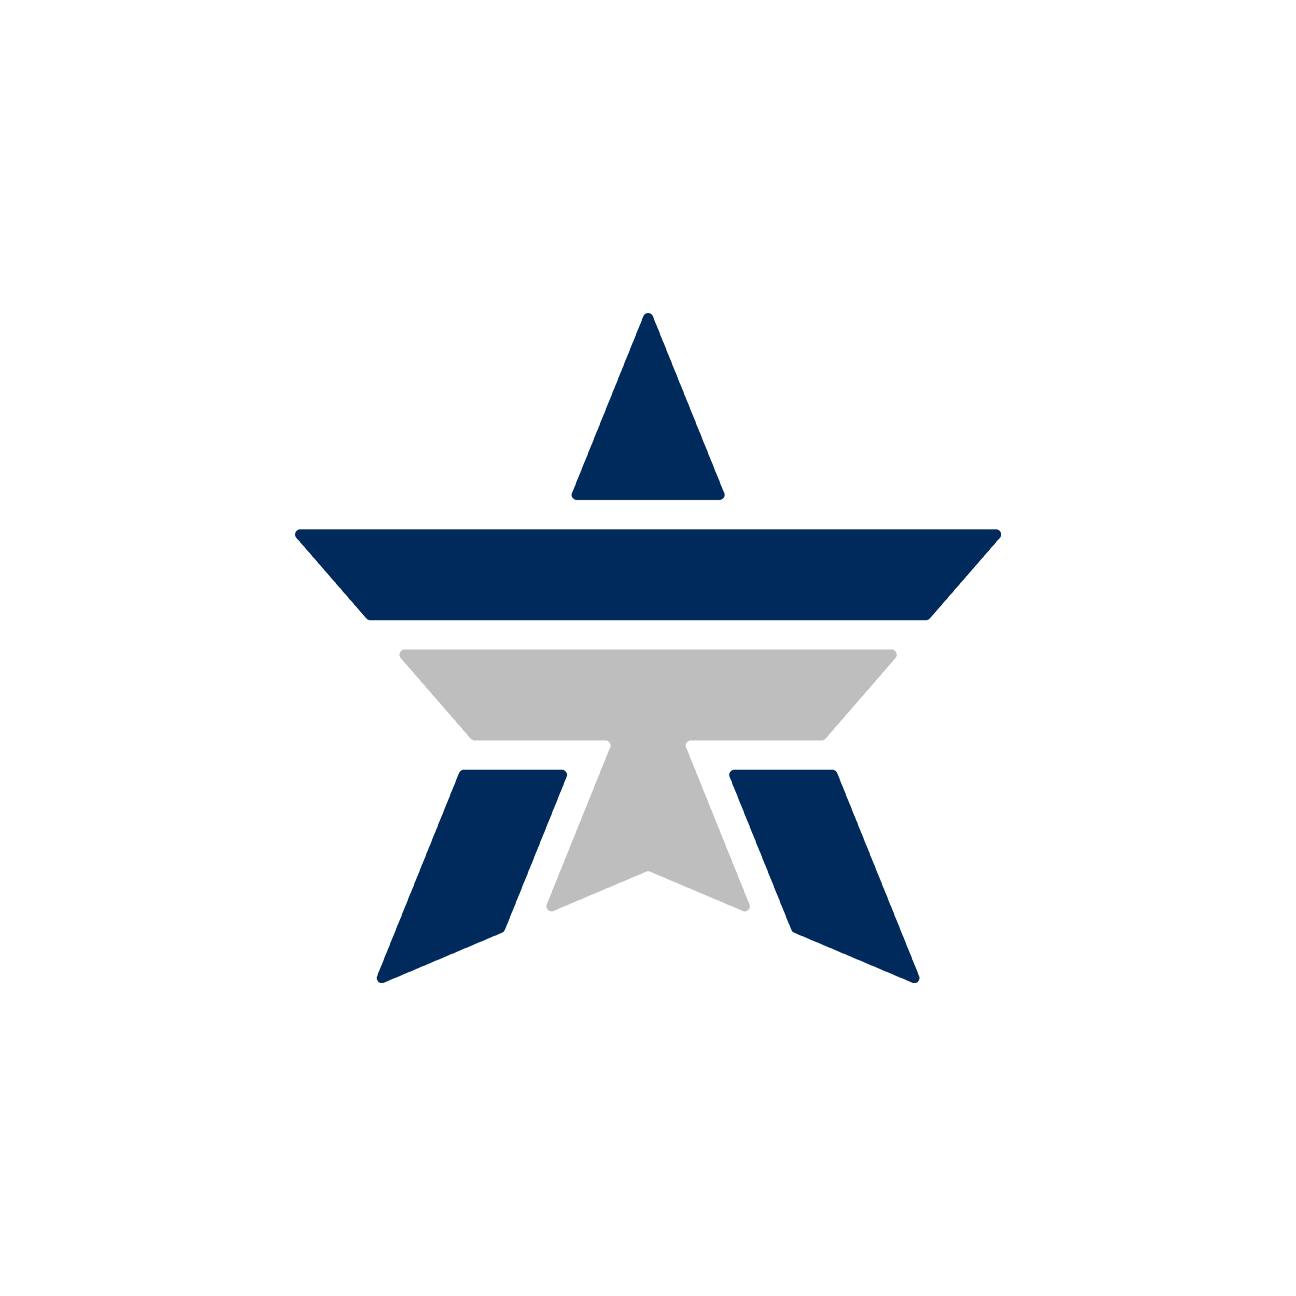 ESPN designed logos for Cowboys QB Tony Romo: What do you think?